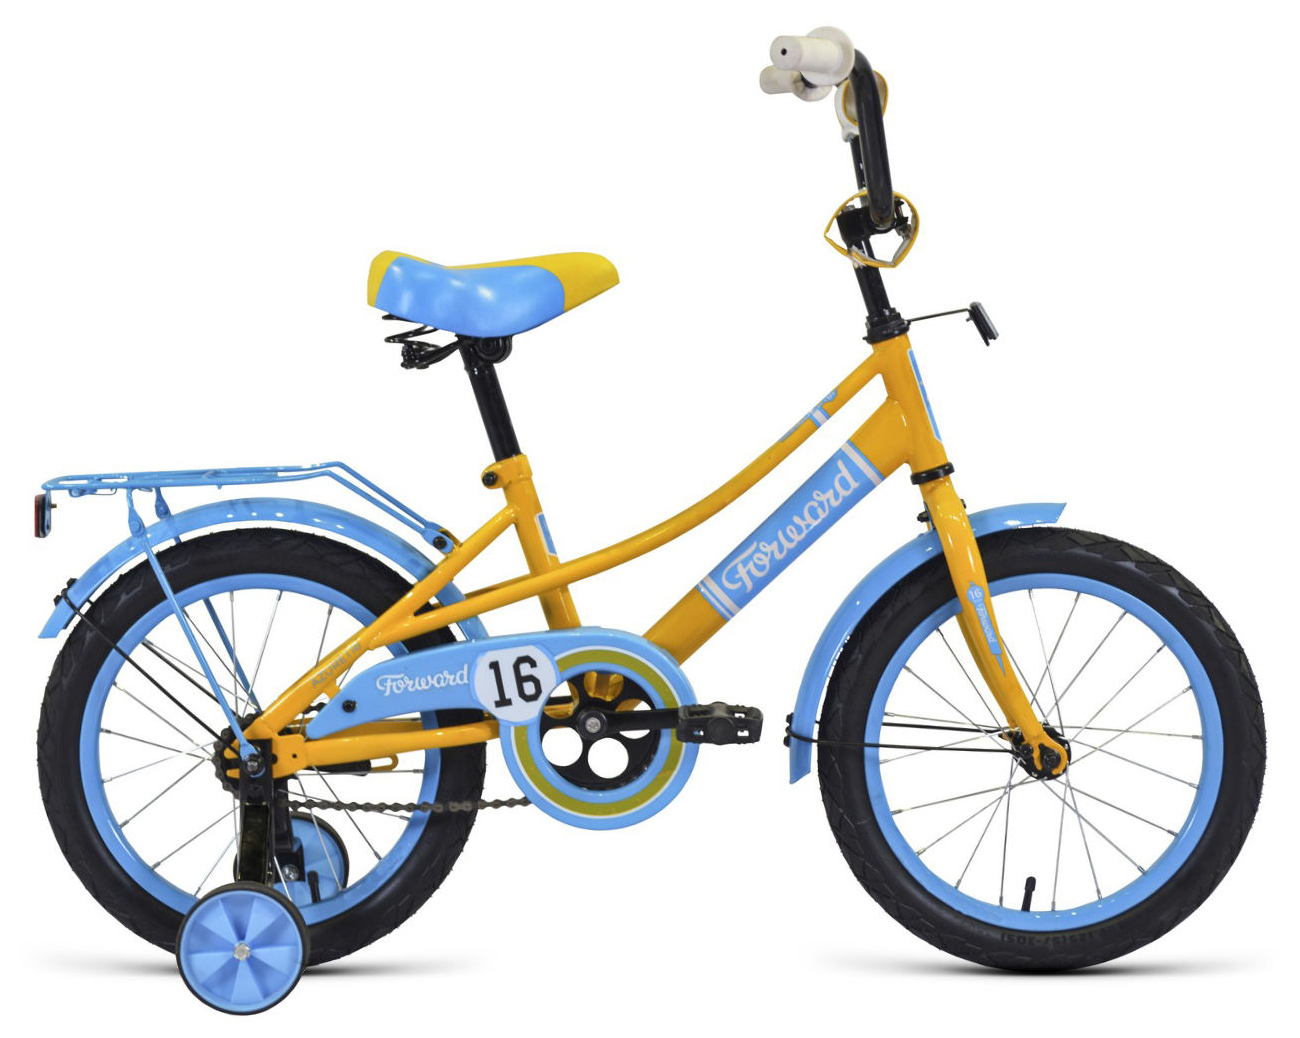  Отзывы о Трехколесный детский велосипед Forward Azure 18 2020